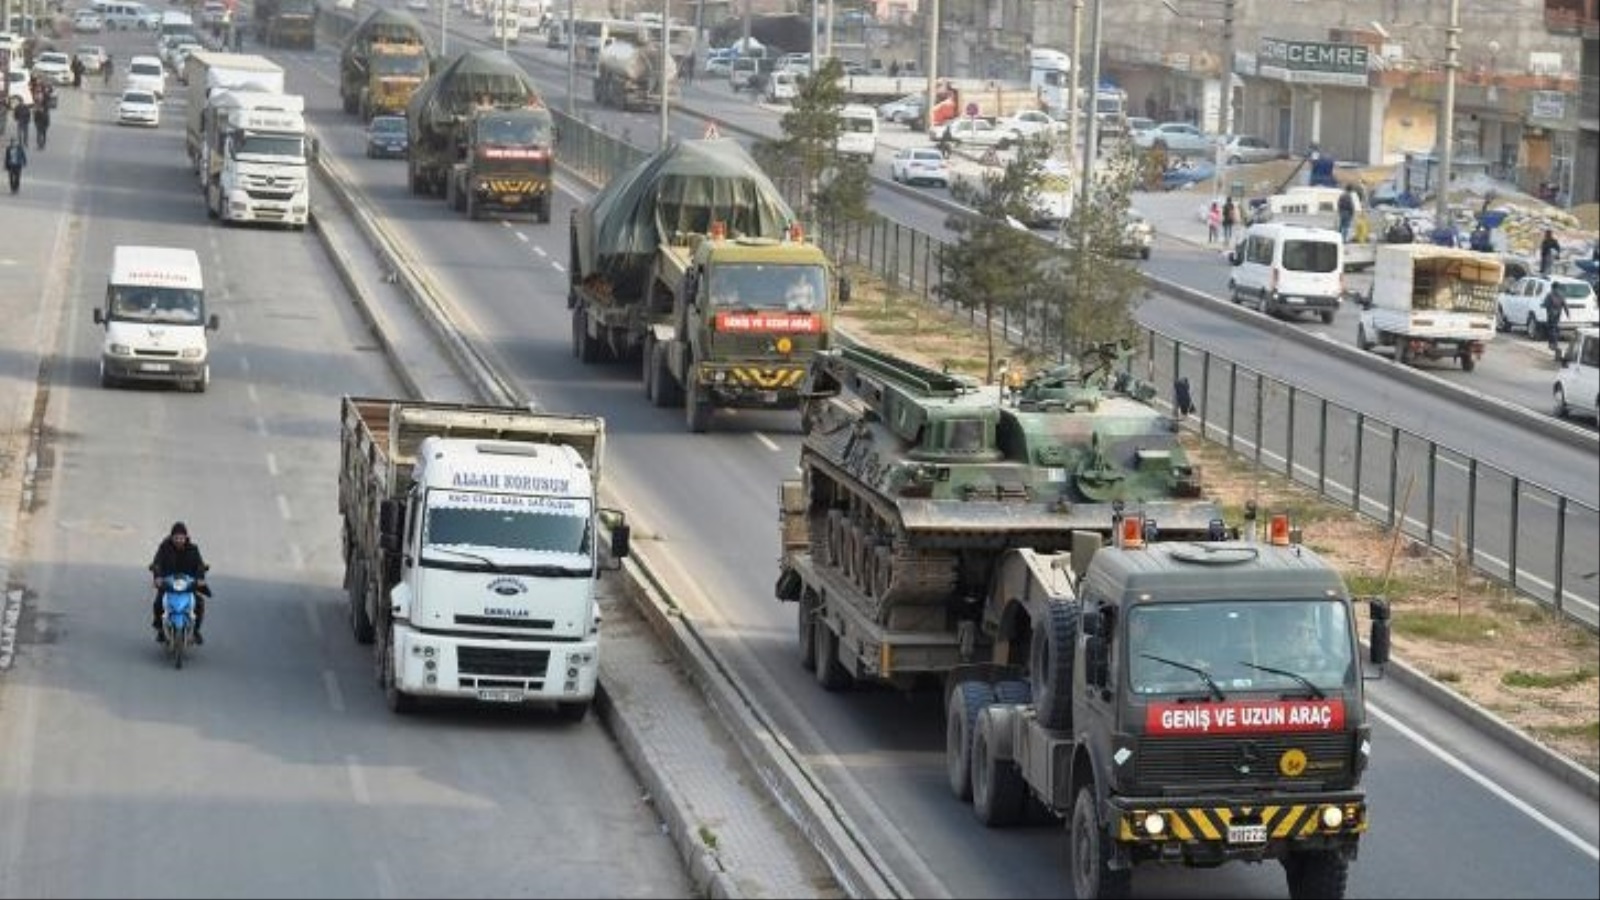 
قافلة عسكرية تركية توجهت لريف إدلب ضمن مهمة مراقبة وقف النار (الأناضول)
